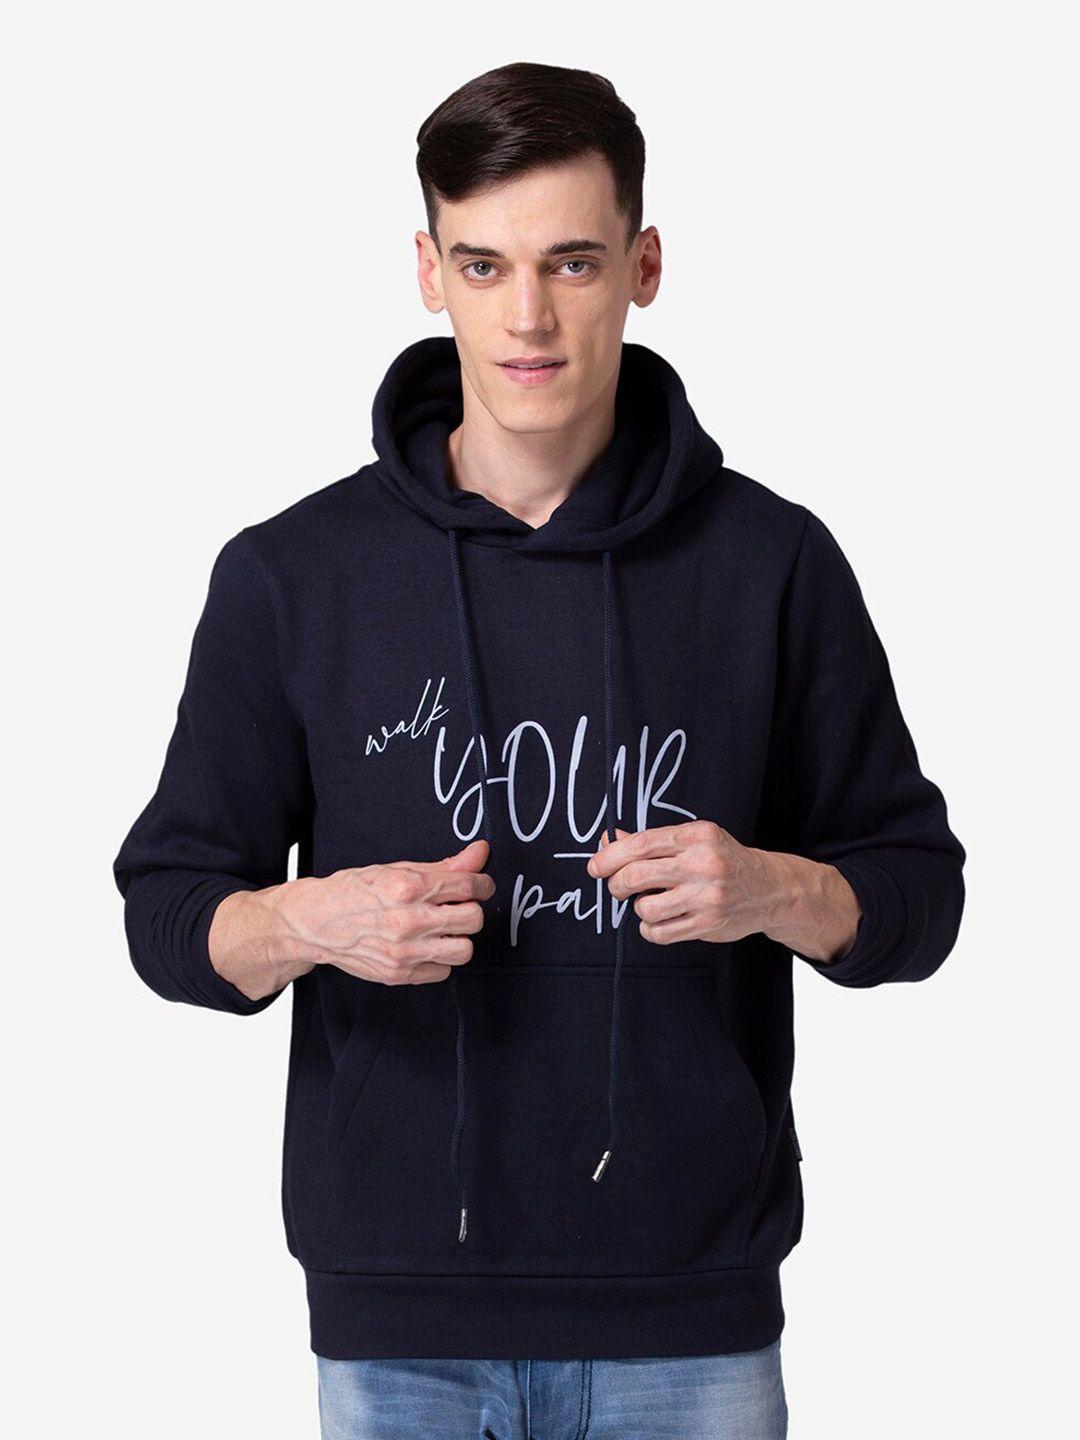 allen-cooper-printed-cotton-hooded-sweatshirt